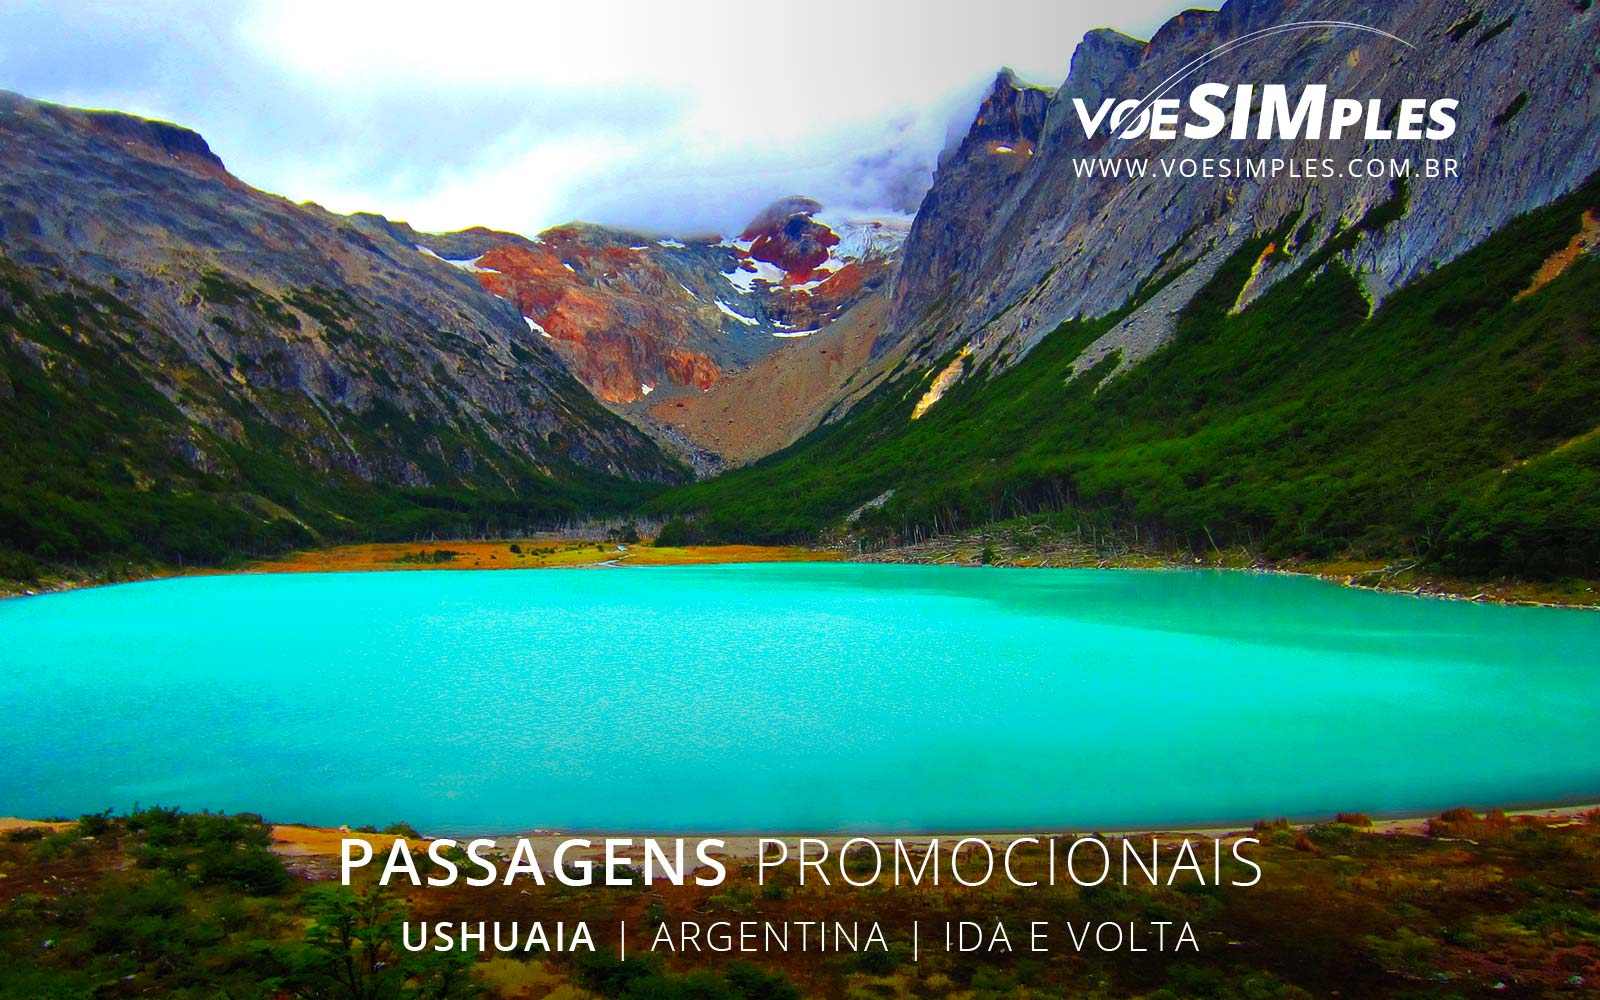 passagens-aereas-baratas-ushuaia-argentina-america-sul-voe-simples-passages-aereas-promocionais-argentina-passagens-promo-ushuaia